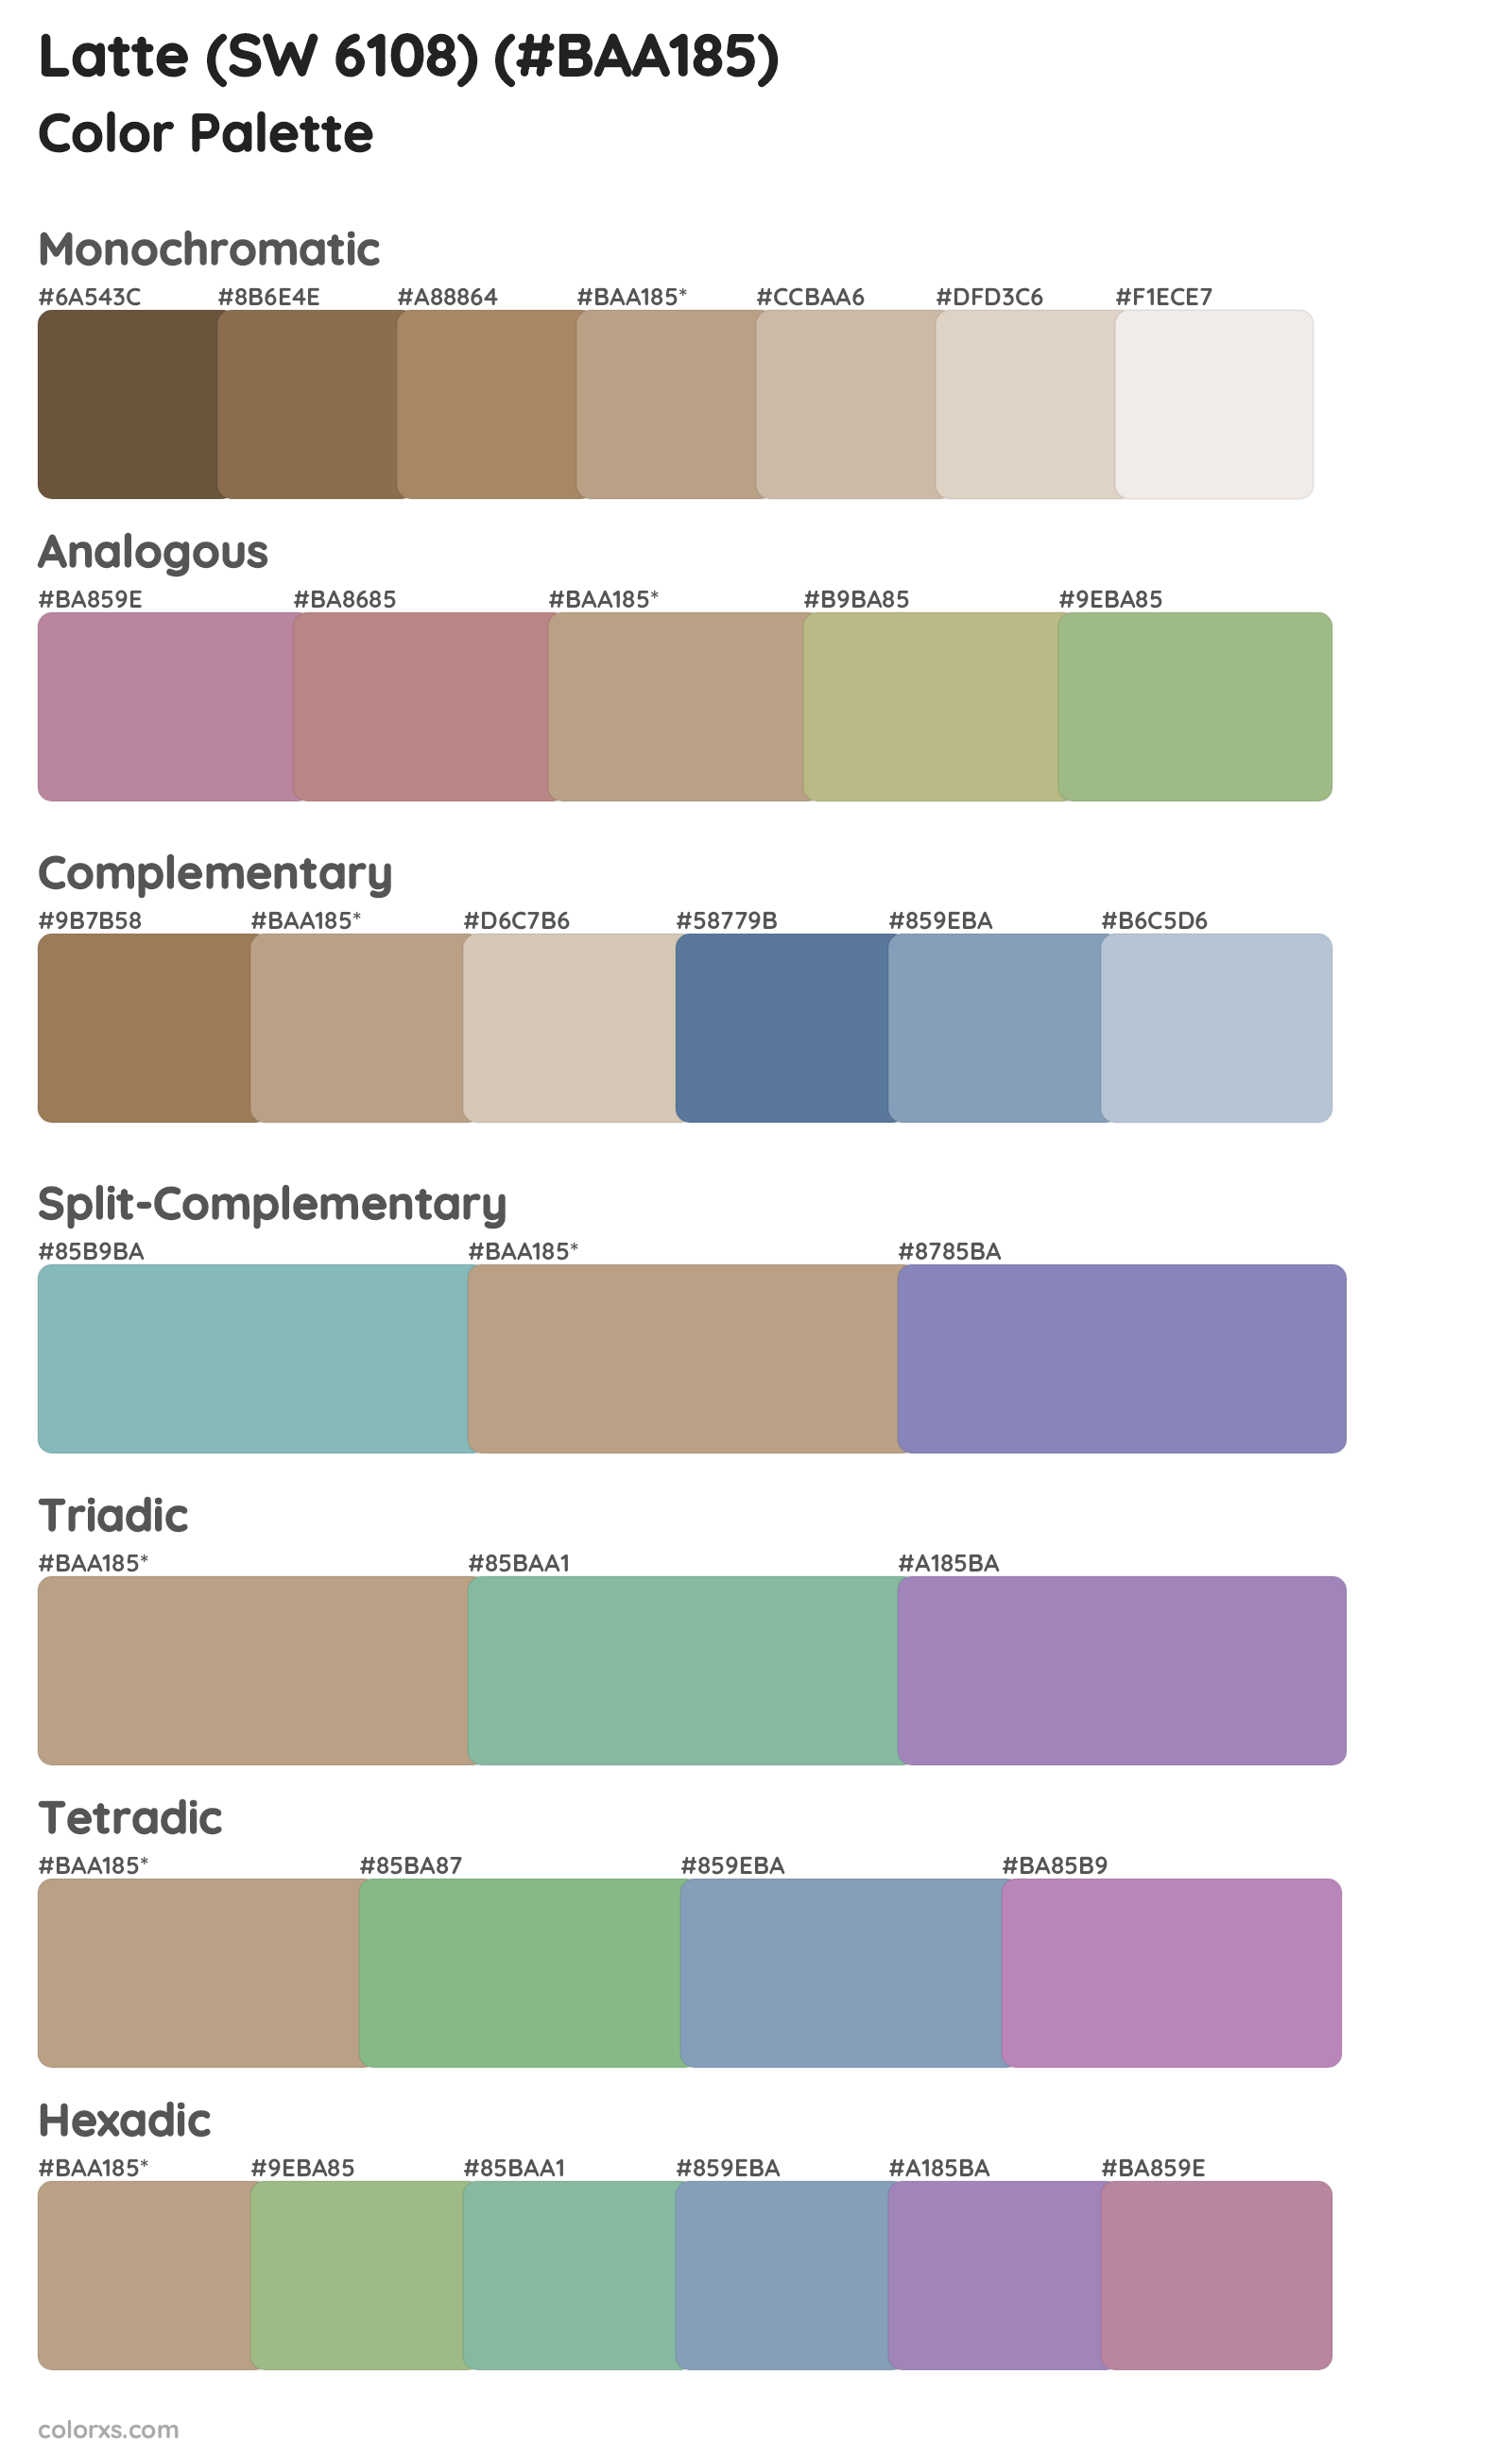 Latte (SW 6108) Color Scheme Palettes